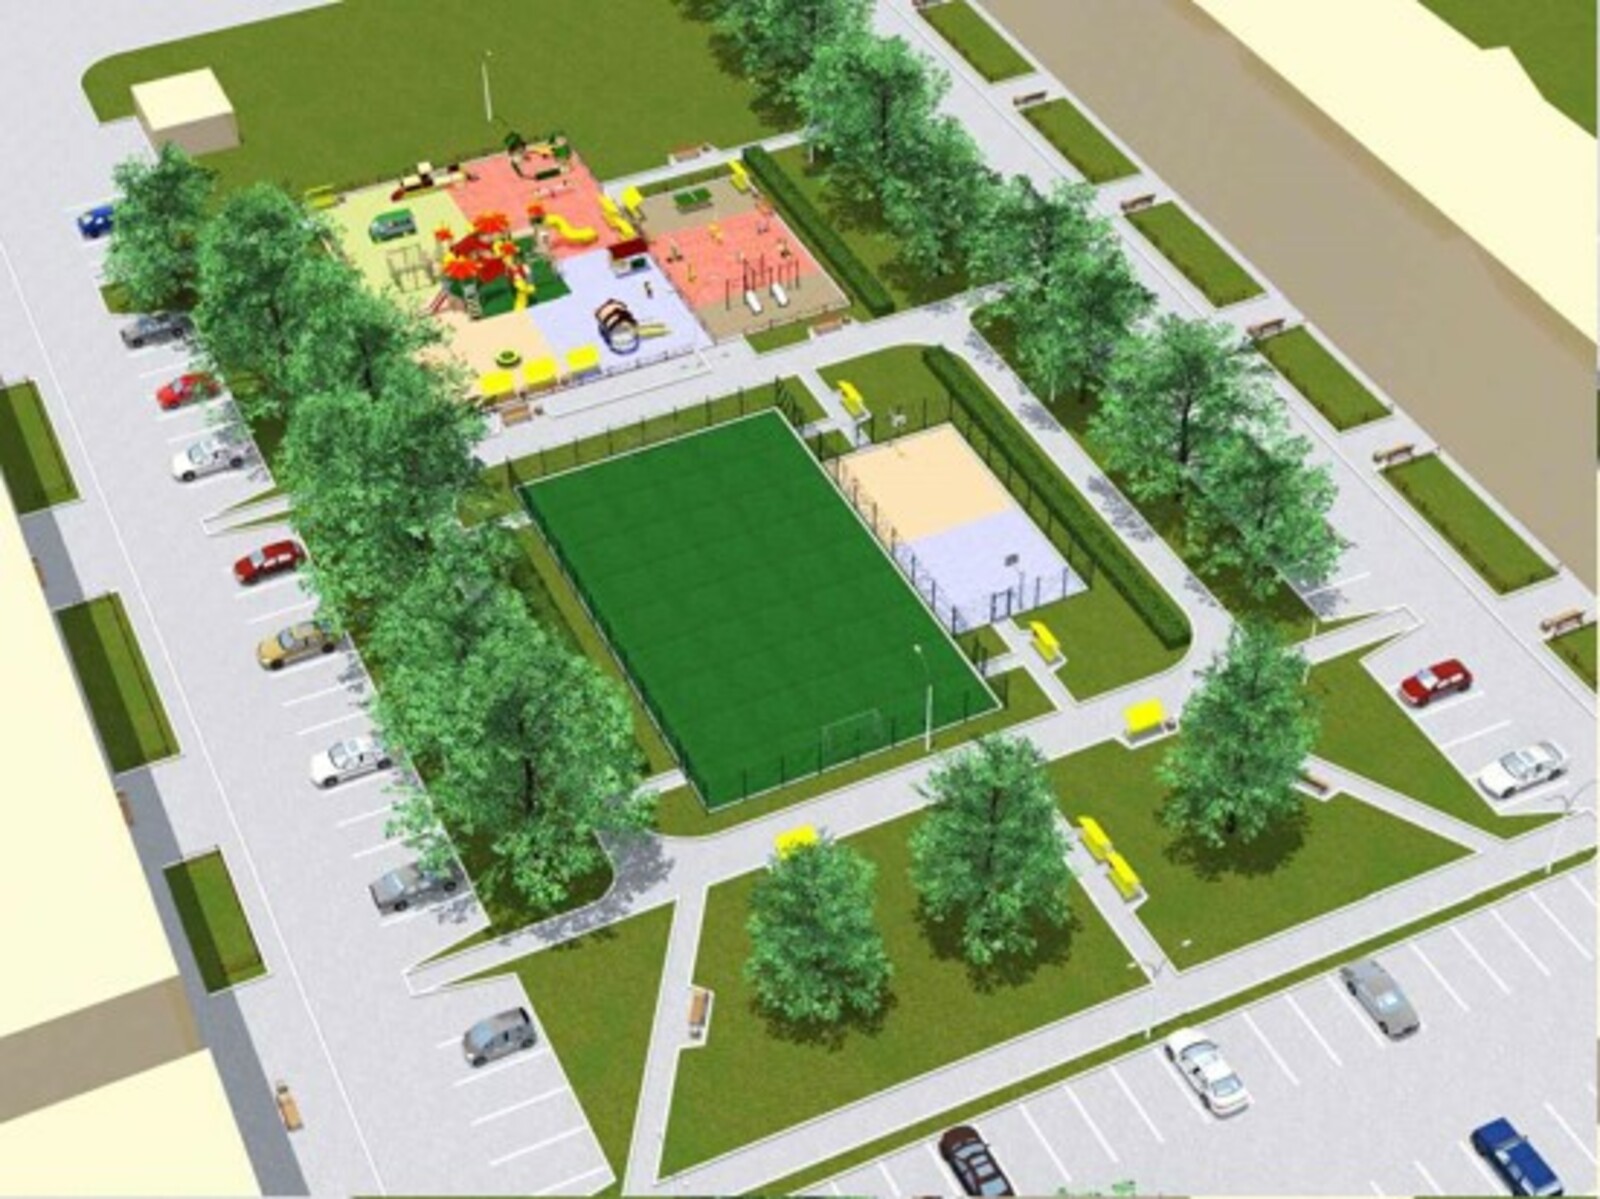 Топ-3: какие территории города Салавата будут благоустроены в 2022 году по программе "Башкирские дворики"